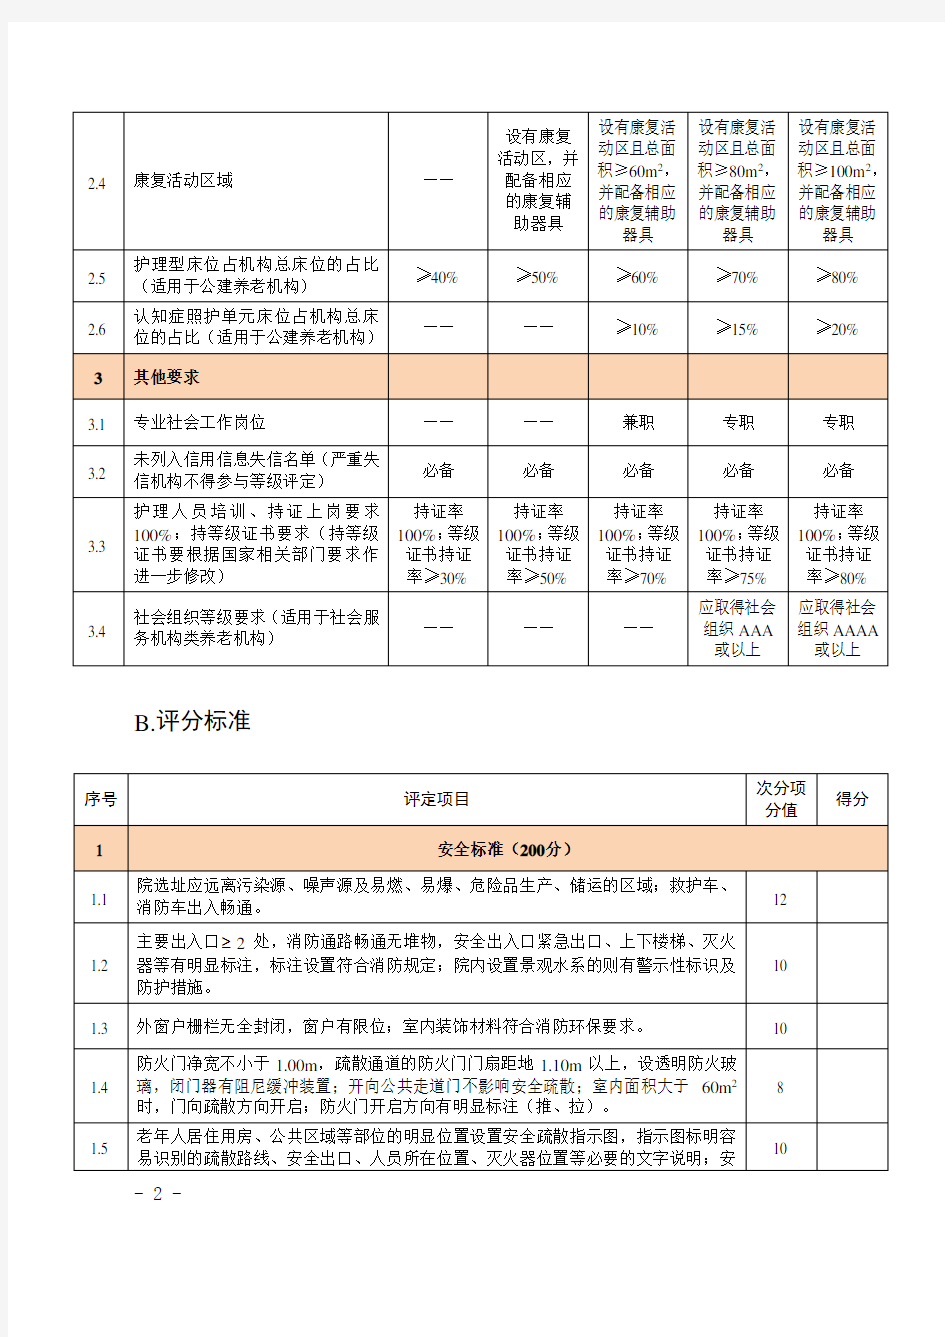 上海市养老机构等级评定标准细则